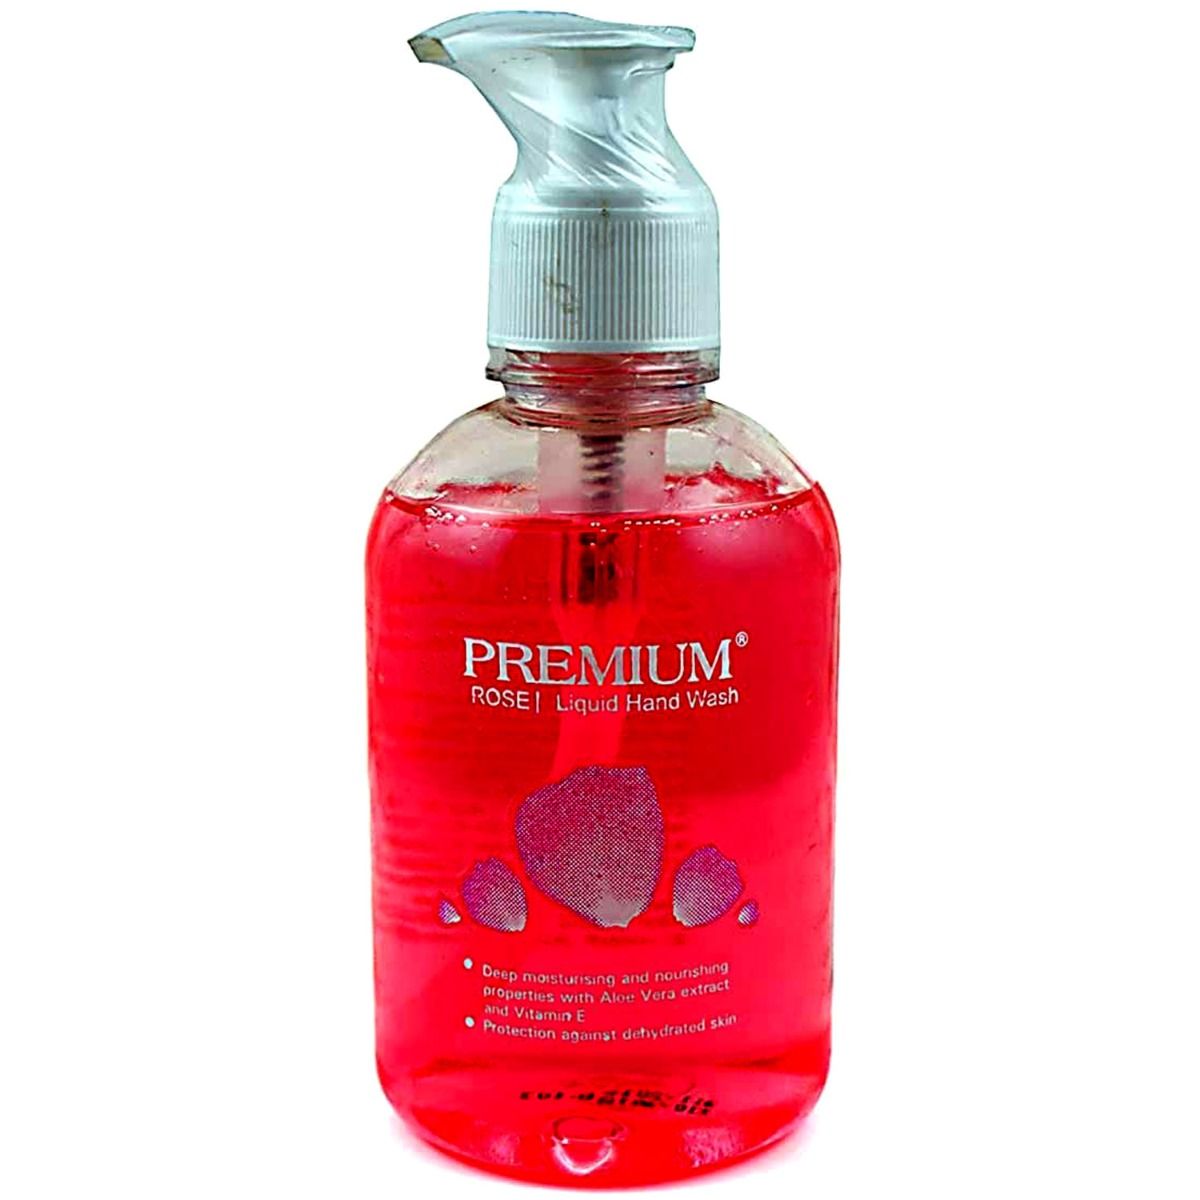 Premium Rose Liquid Handwash, 250 ml Pump Bottle, Pack of 1 